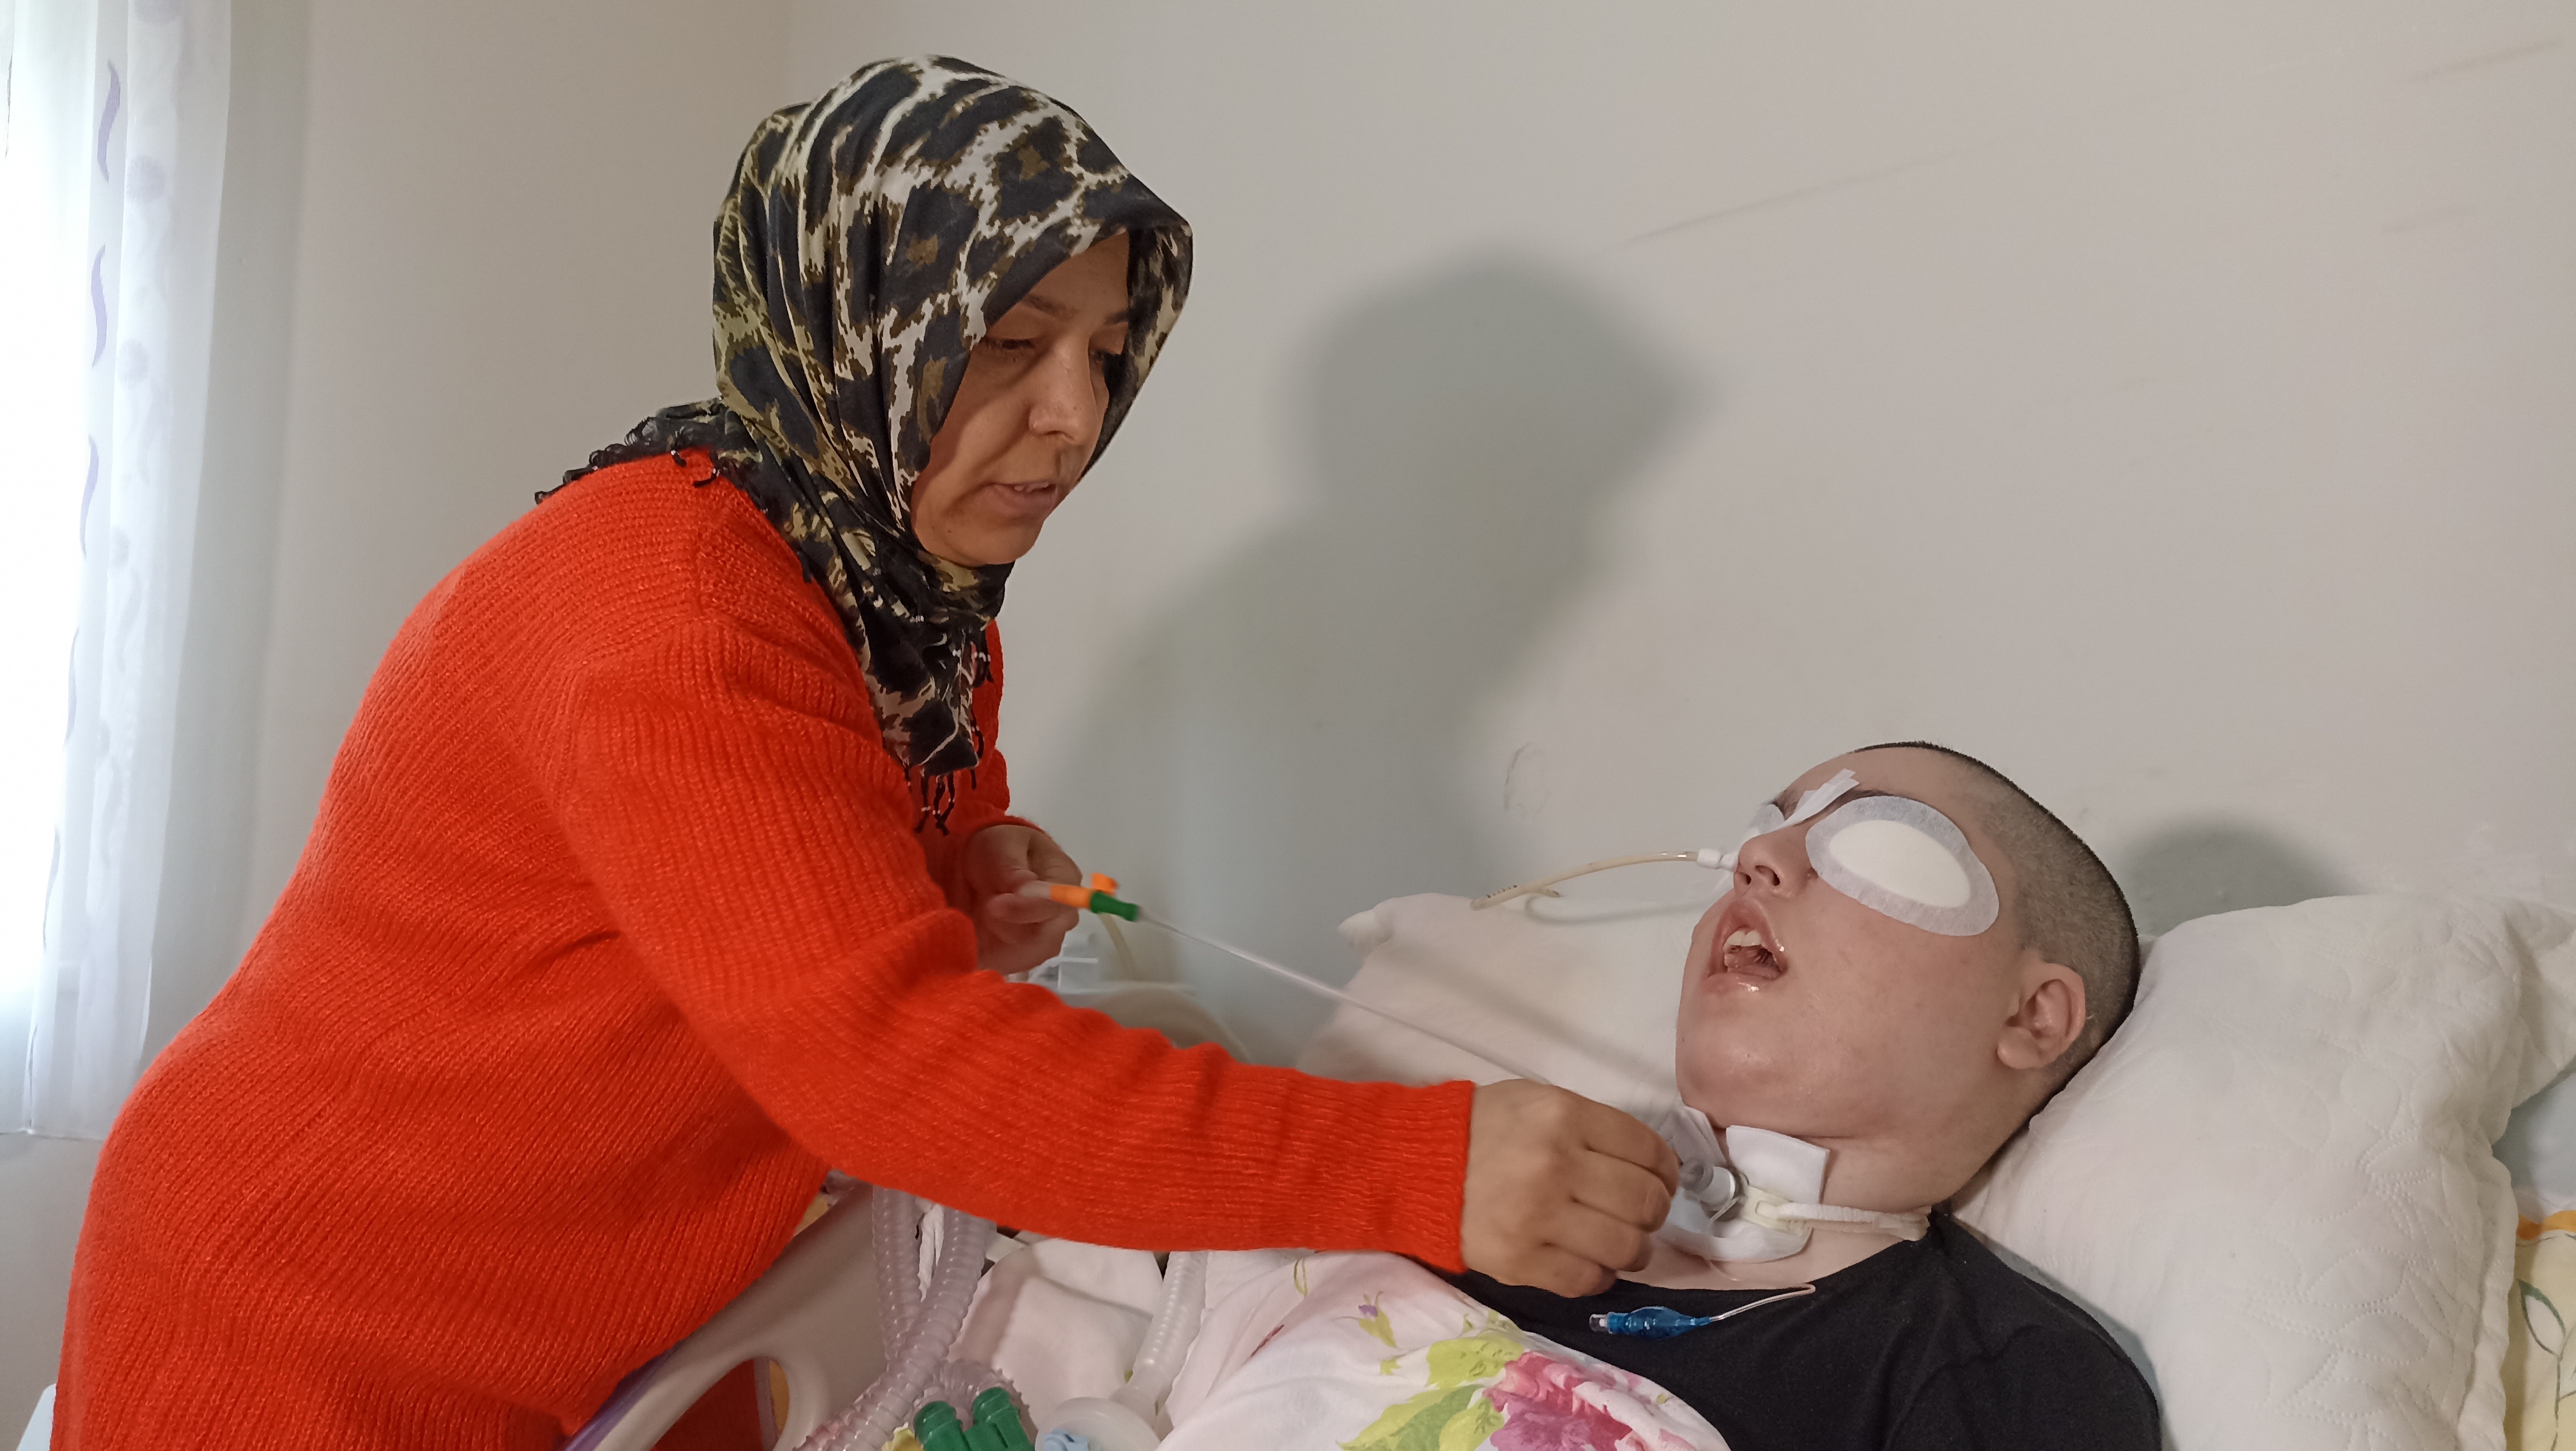 İstanbul'da yaşayan Bilgen- Adem Ataş çiftinin 4 çocuğundan 2'ncisi olan Zilan Ataş, 9 aylıkken yüksek ateş şikayetiyle hastaneye kaldırıldı. Tedavisinin ardından taburcu edilen Zilan, 6 yaşına geldiğinde yürüme güçlüğü çekmeye başladı. Yürürken düşmeye başlayan Zilan'ın halsizlik belirtilerinin artmasıyla Bilgen Ataş, çocuğunu hastaneye götürdü. Kontrollerinde Zilan'ın 9 aylıkken kızamık hastalığı geçirdiği, kızamık virüsünün ise beyne sıçradığı tespit edildi. Santral sinir sisteminde kızamık virüsüyle oluşan ilerleyici, ölümcül bir yavaş virüs enfeksiyonu olan Subakut Sklerozan Panensefalit (SSPE) teşhisi konulan ve doktorların en fazla 1 yıl ömür biçtiği Zilan, 15 yaşına kadar zihinsel ve bedensel engelli olarak hayatını sürdürdü. 4 yıl önce bitkisel hayata giren Zilan, makinelere bağlı olarak yaşamaya başladı.
